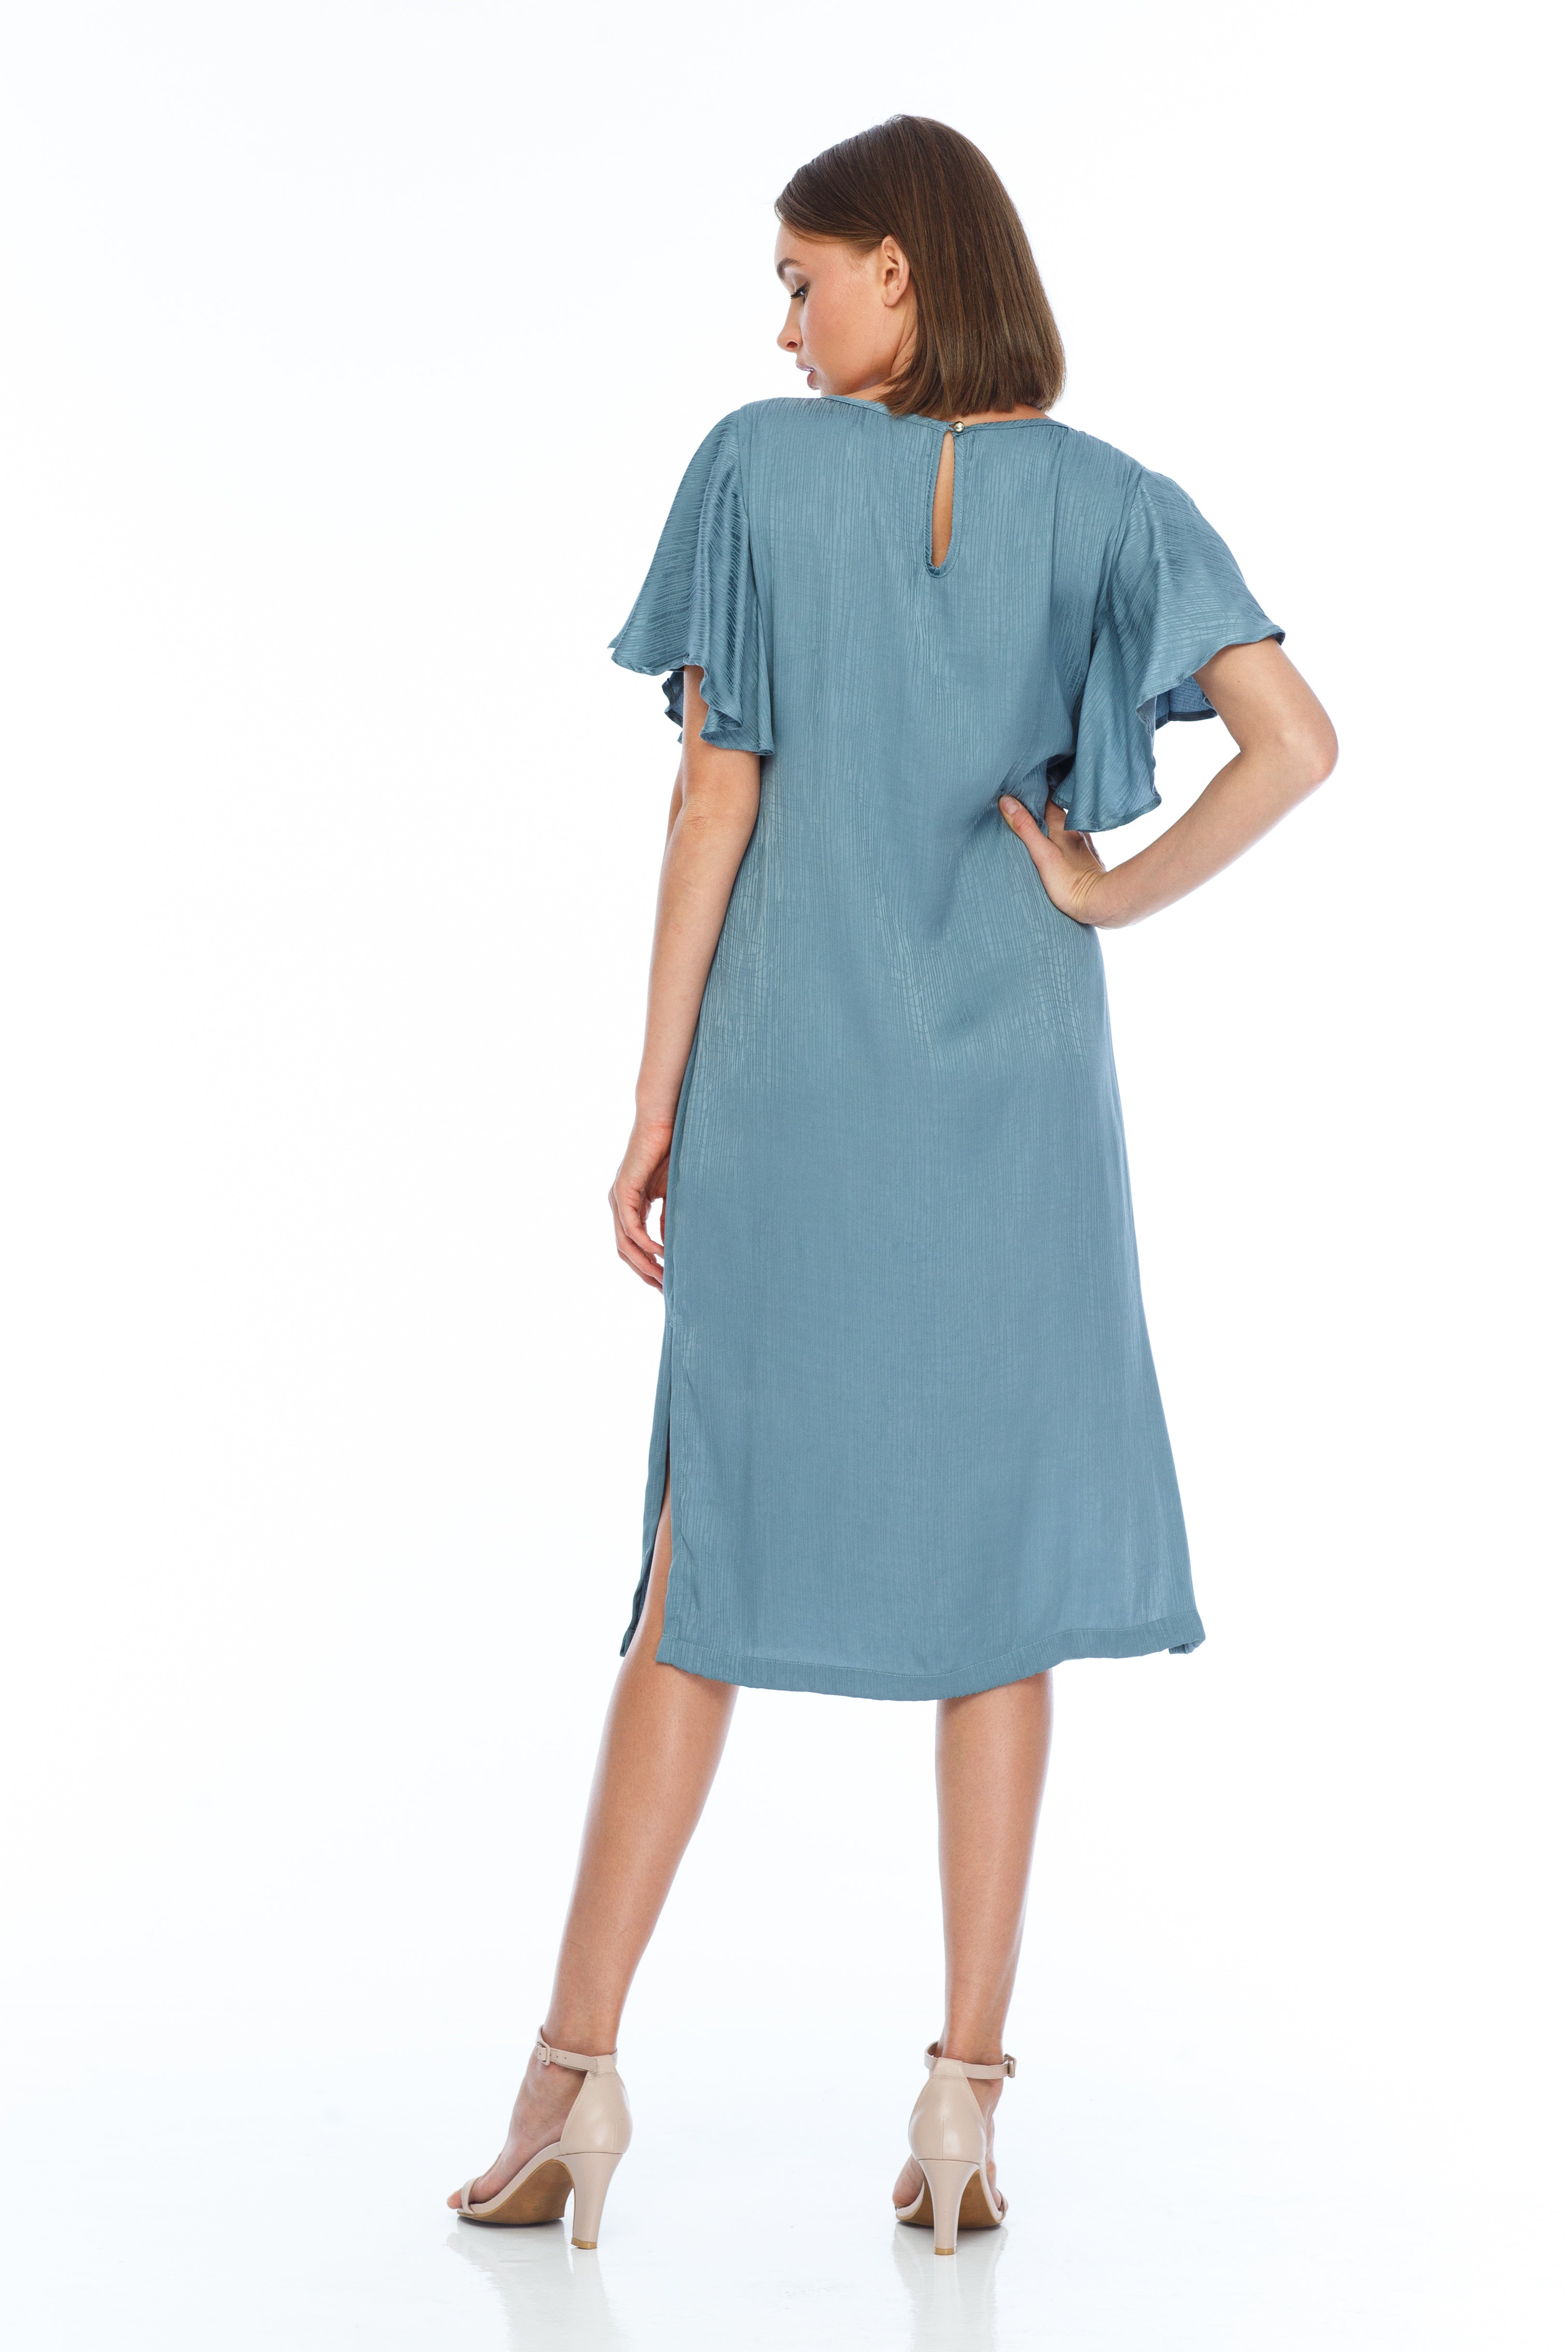 Charm Dress - silky blue flutter sleeve dress